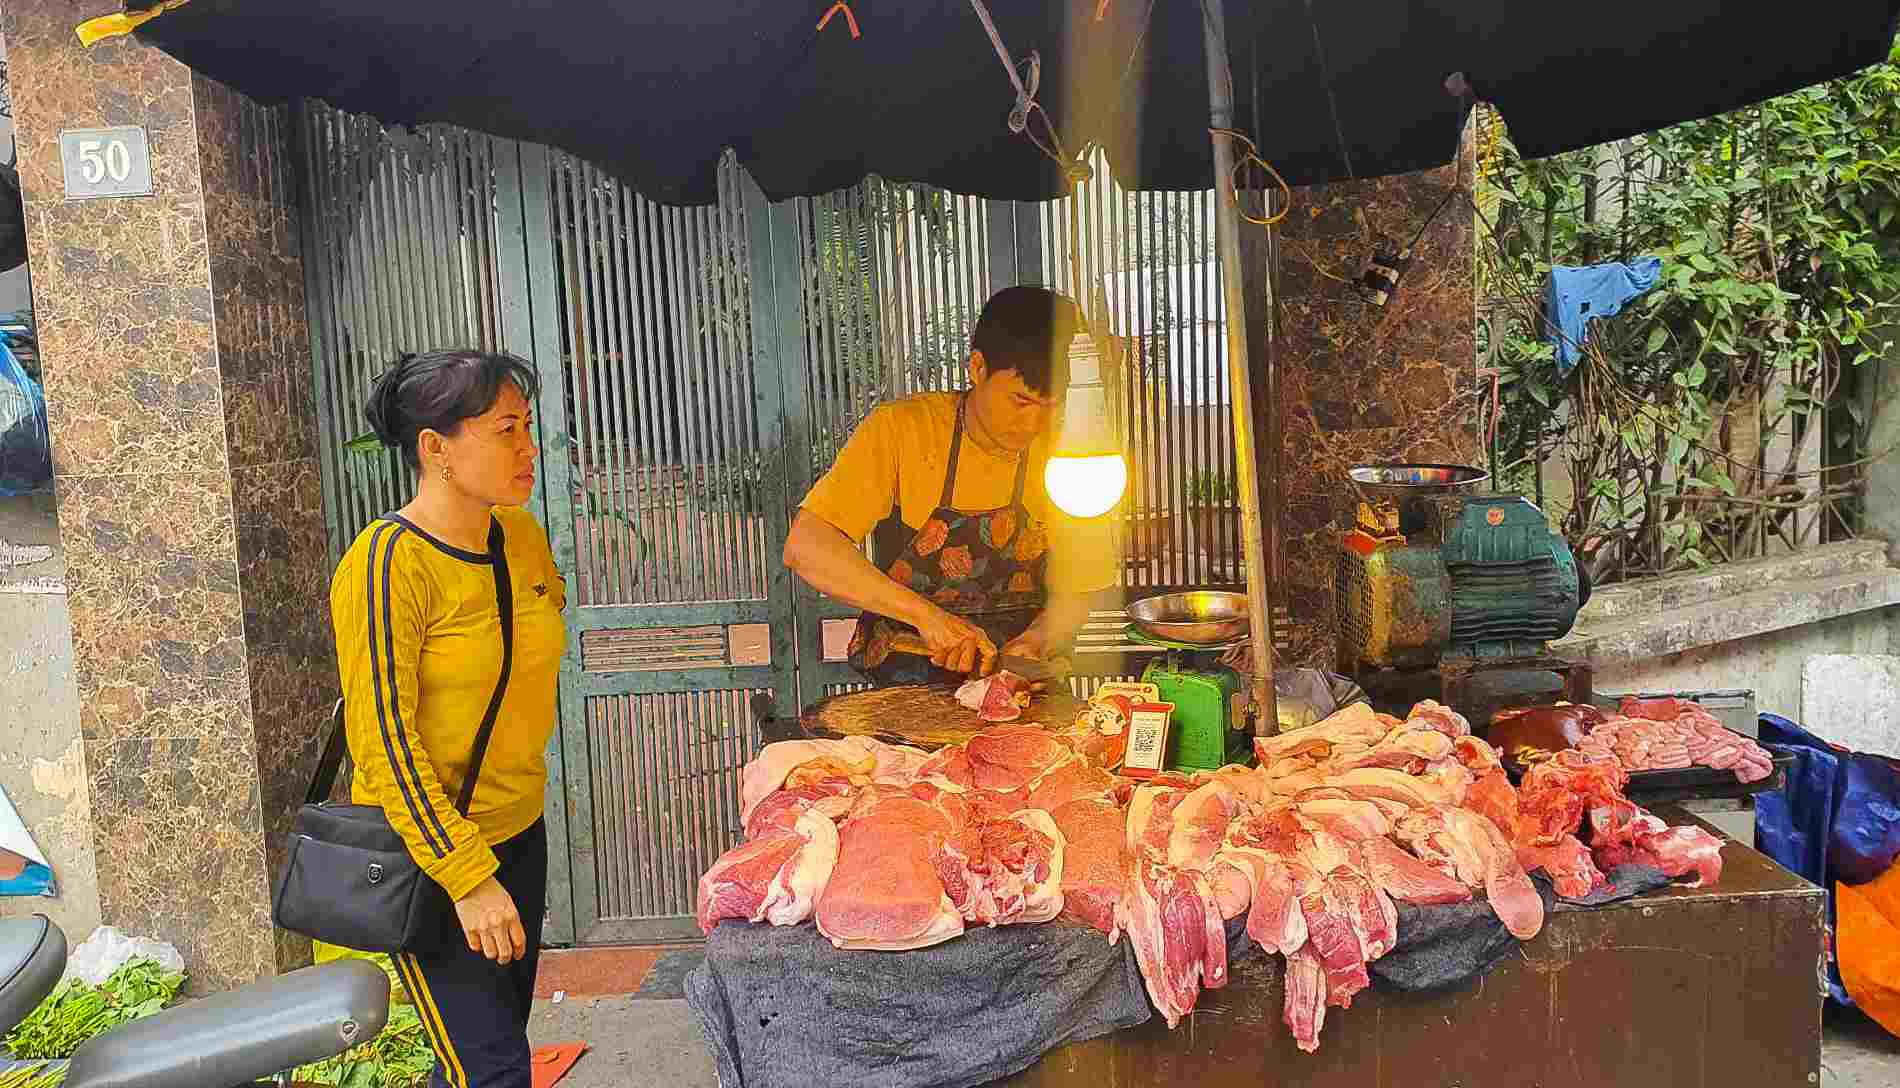 Tiểu thương cho biết, giá thịt lợn tại chợ đang có xu hướng tăng vì nguồn hàng cũng đang tăng giá. Ảnh: Phan Anh